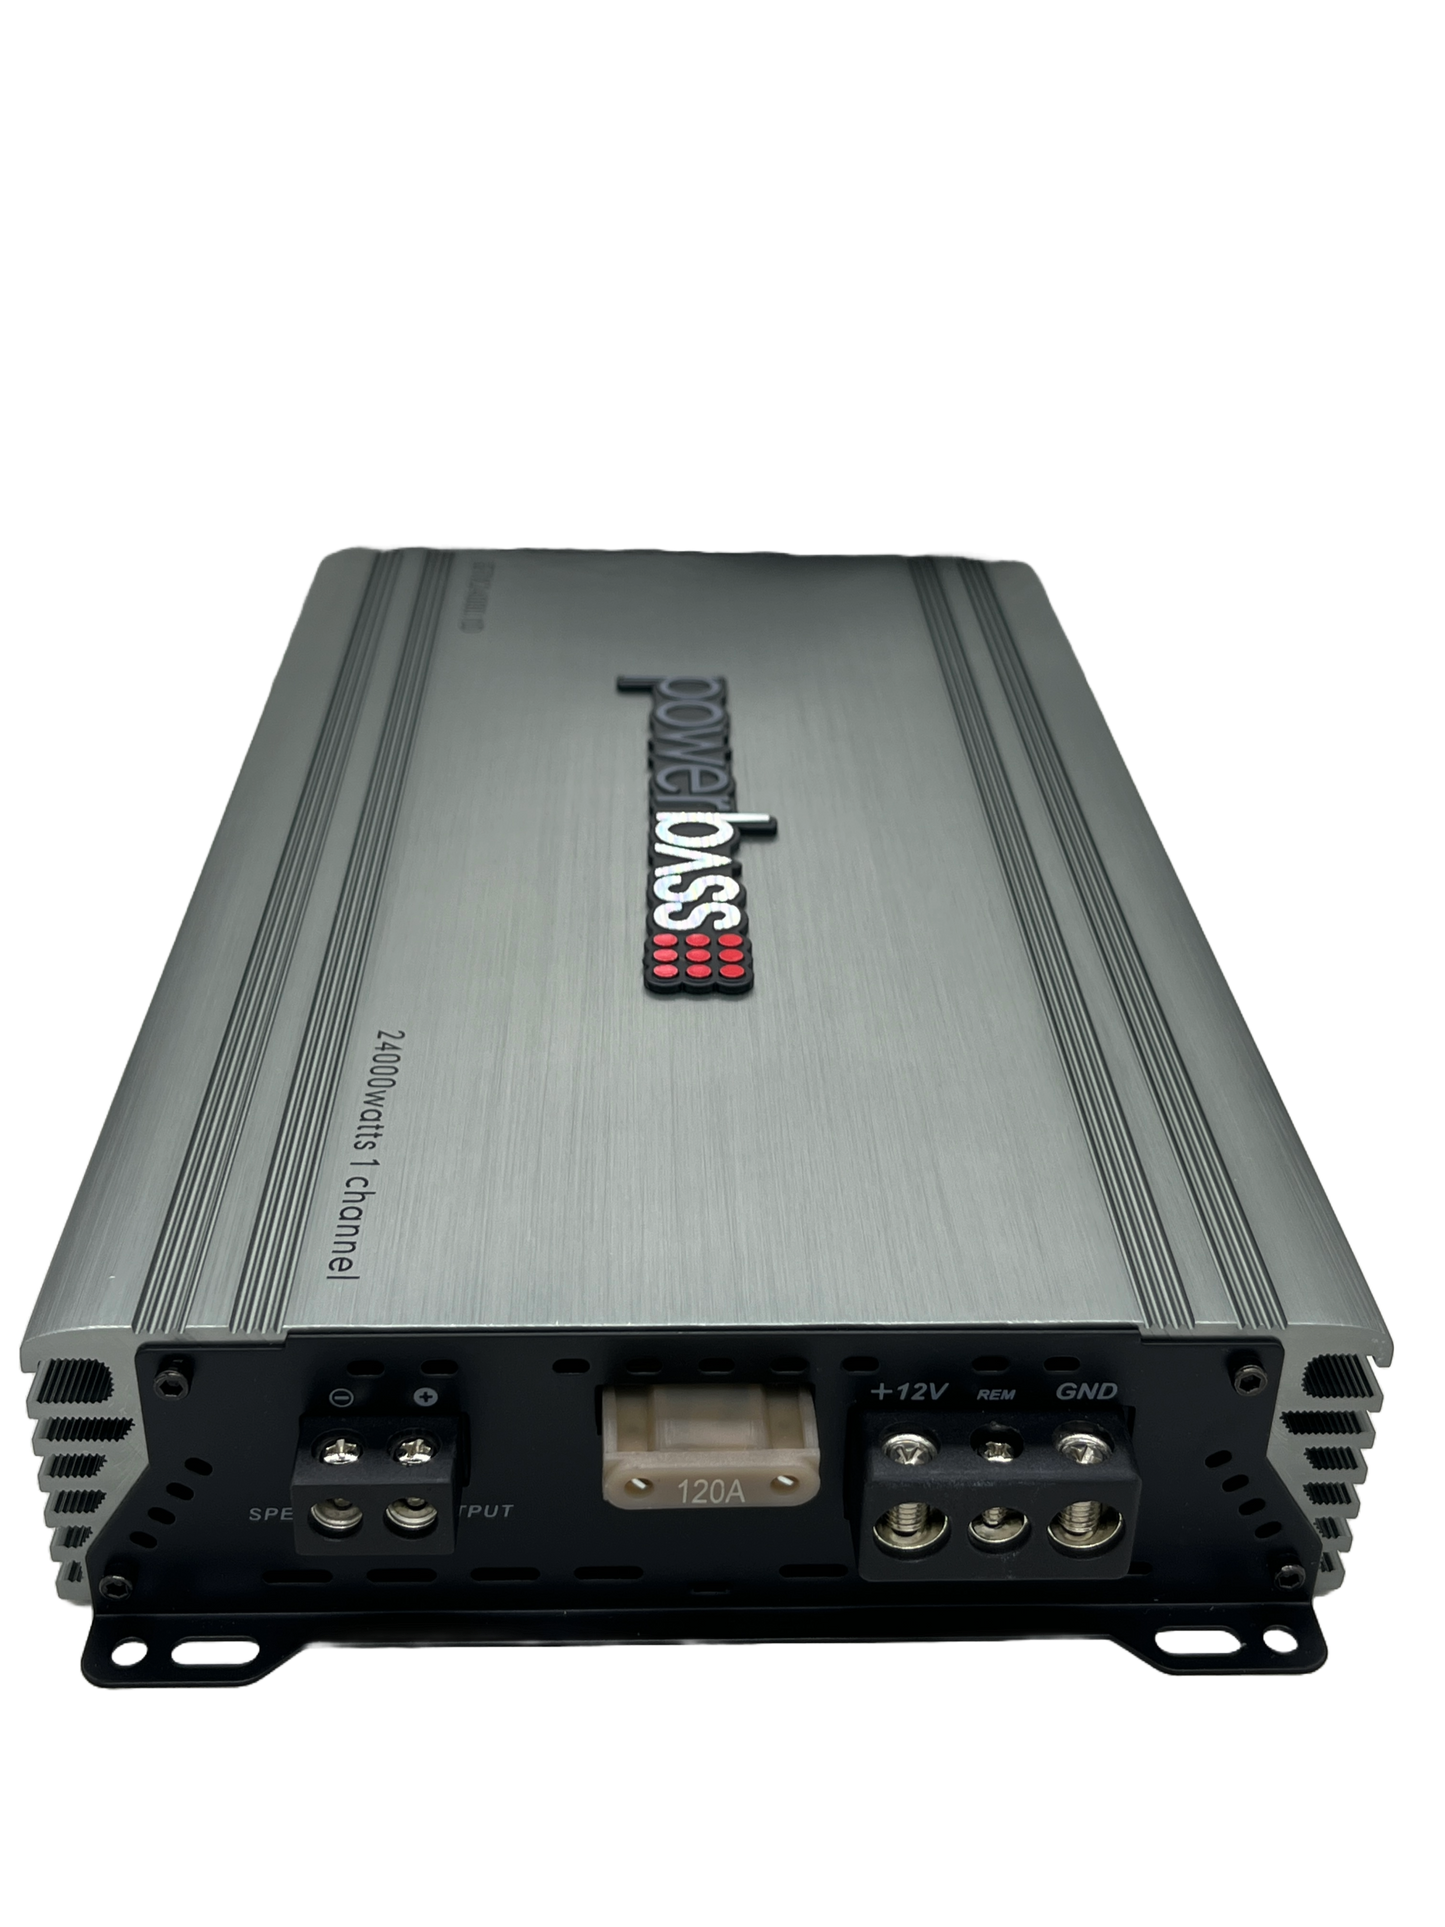 Powerbass GTX24000.1D 24000W Monoblock Amplifier